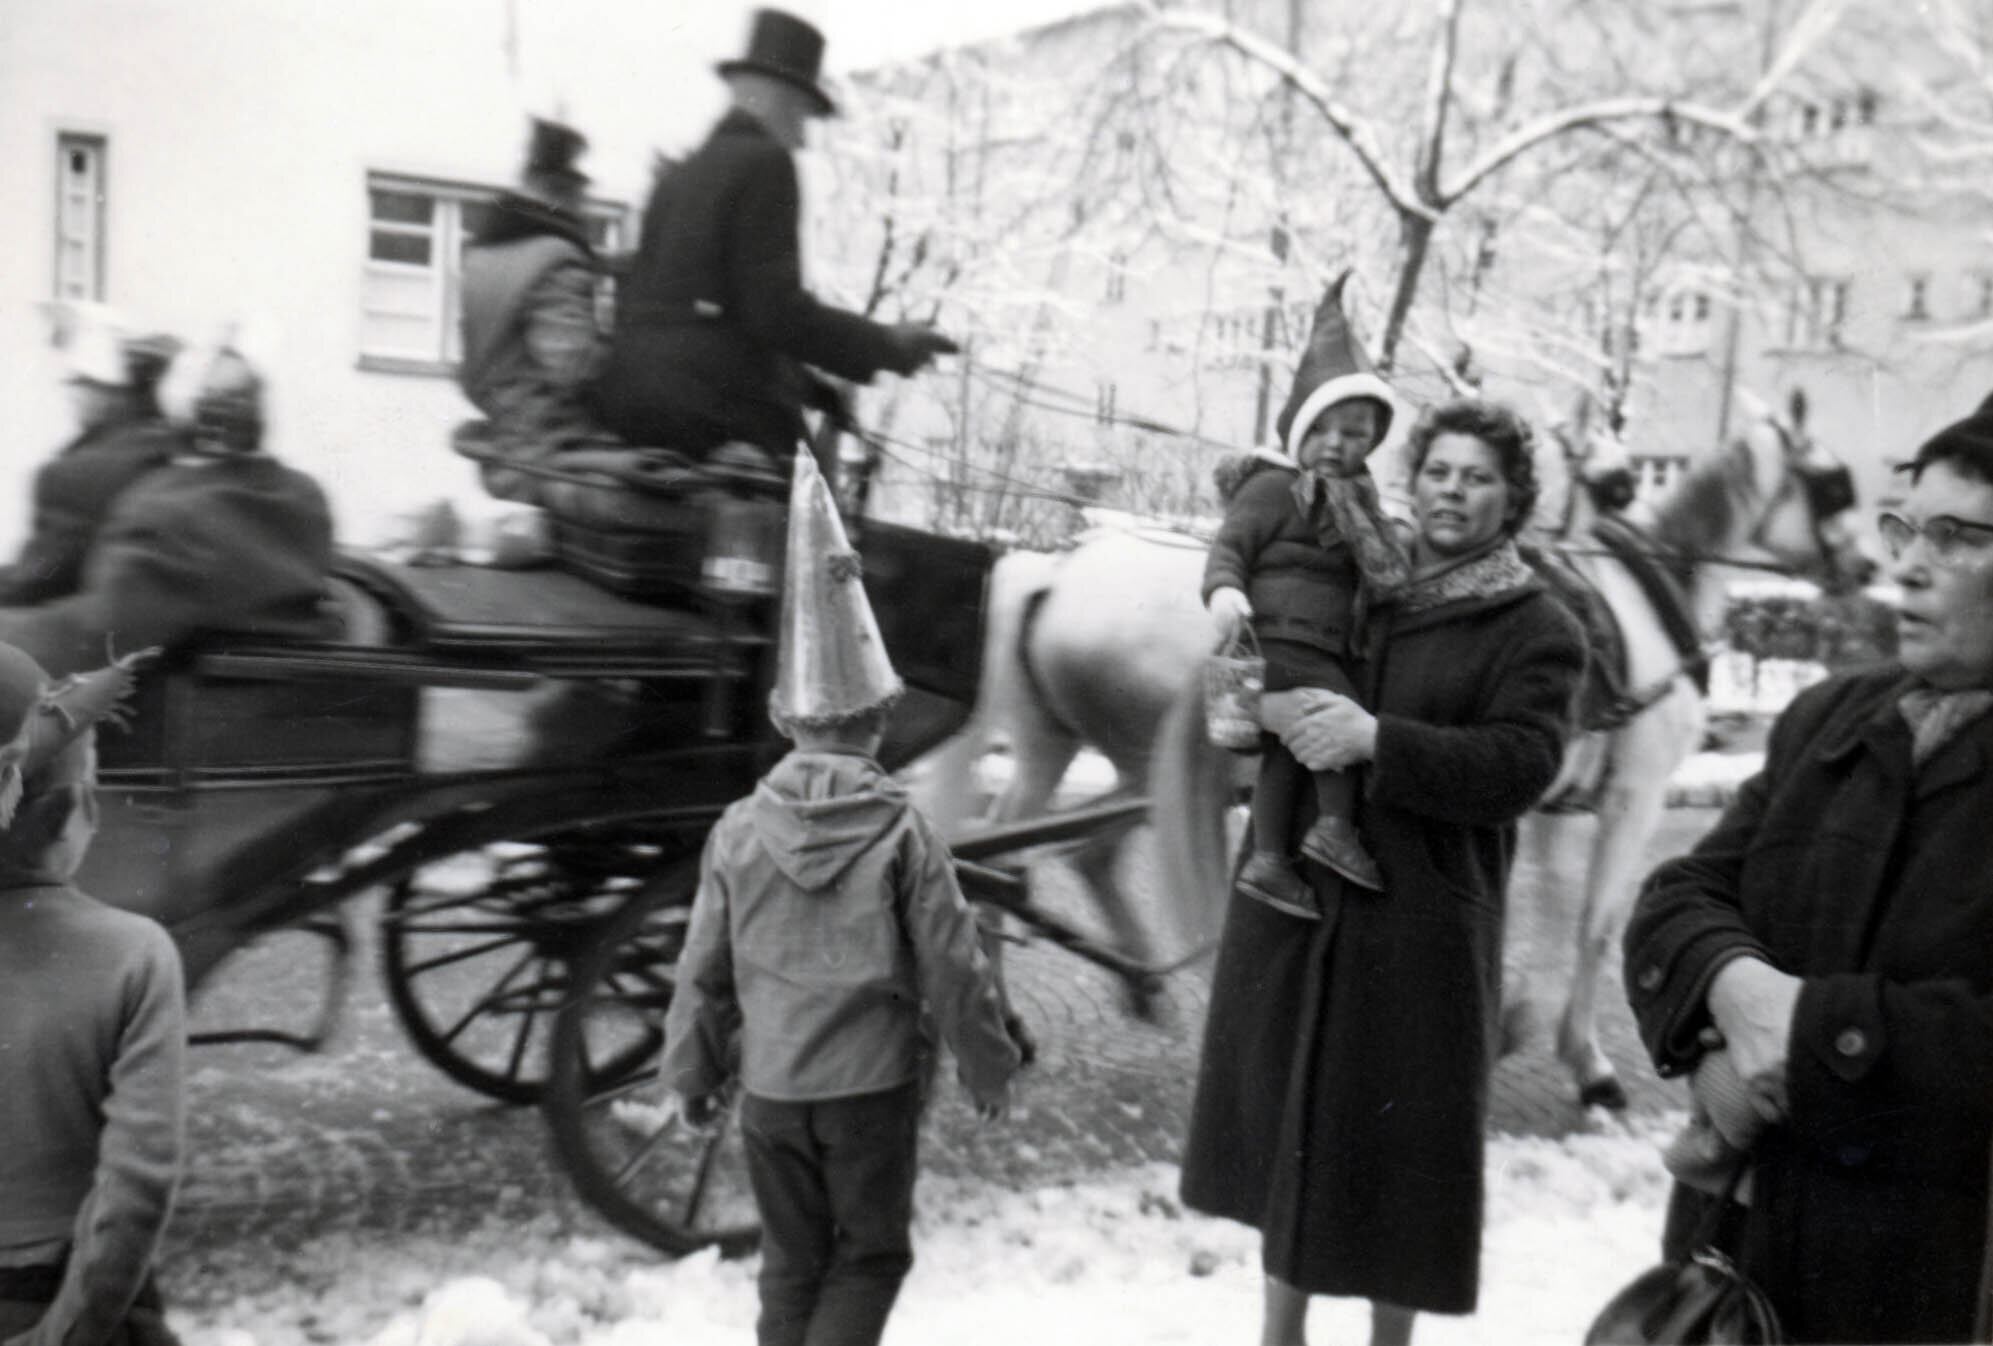 Dorothea auf dem Arm ihrer Mutter, die den Fasching liebte 1957.